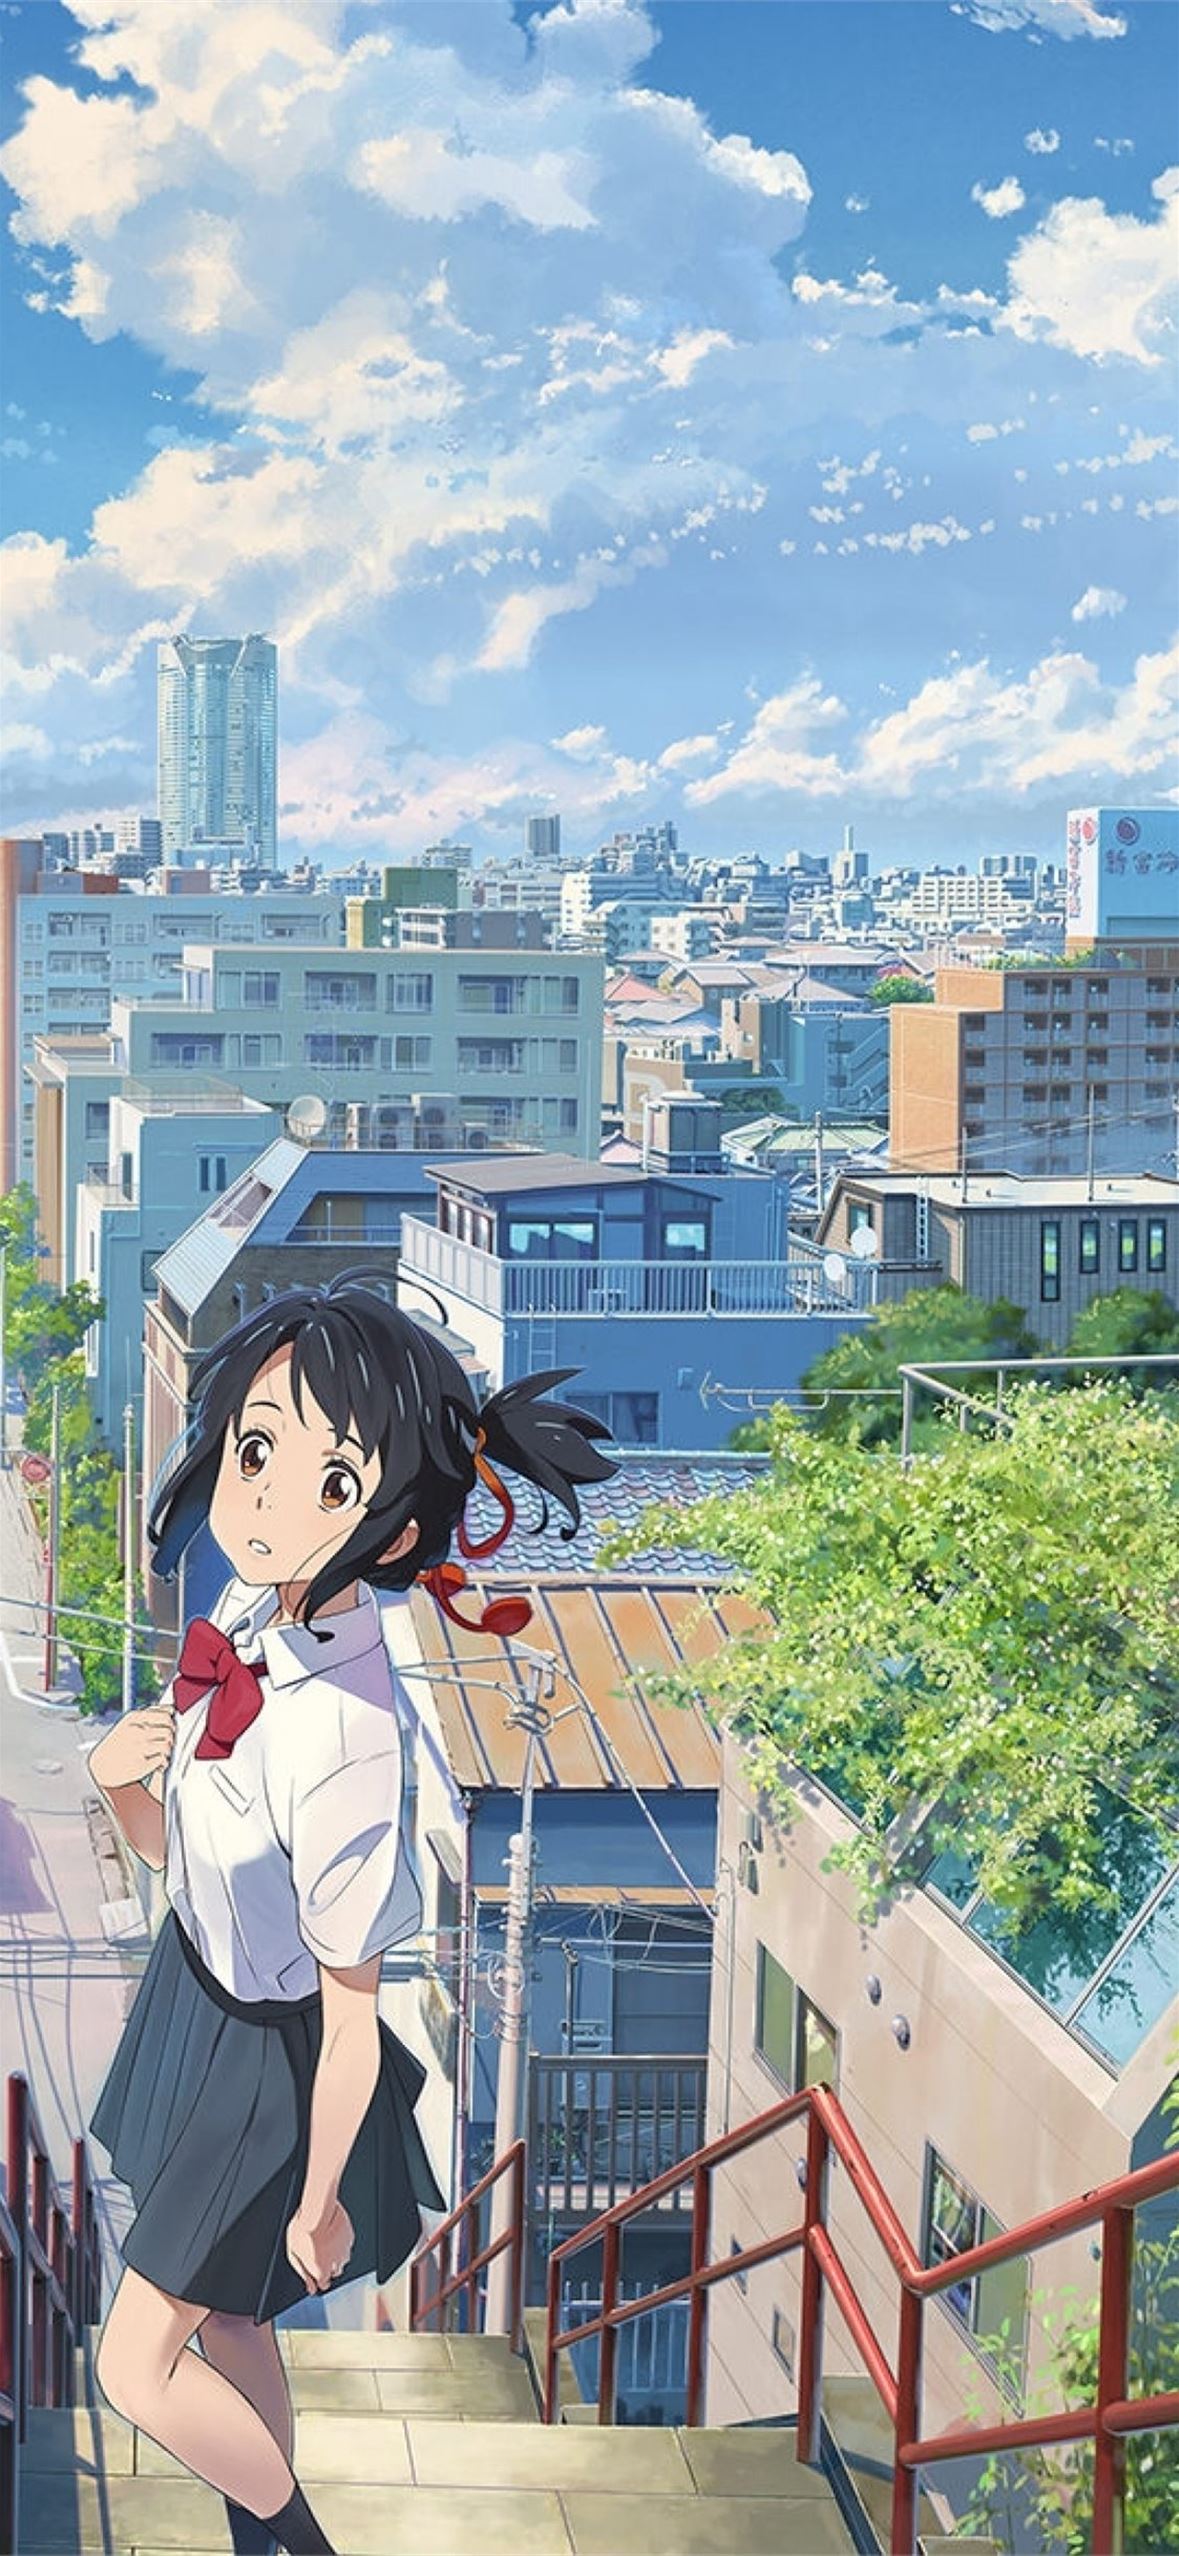 Anime movie Suzume No Tojimari của Shinkai Makoto tung trailer mới, hé lộ  thêm nhân vật và tin tức mới!